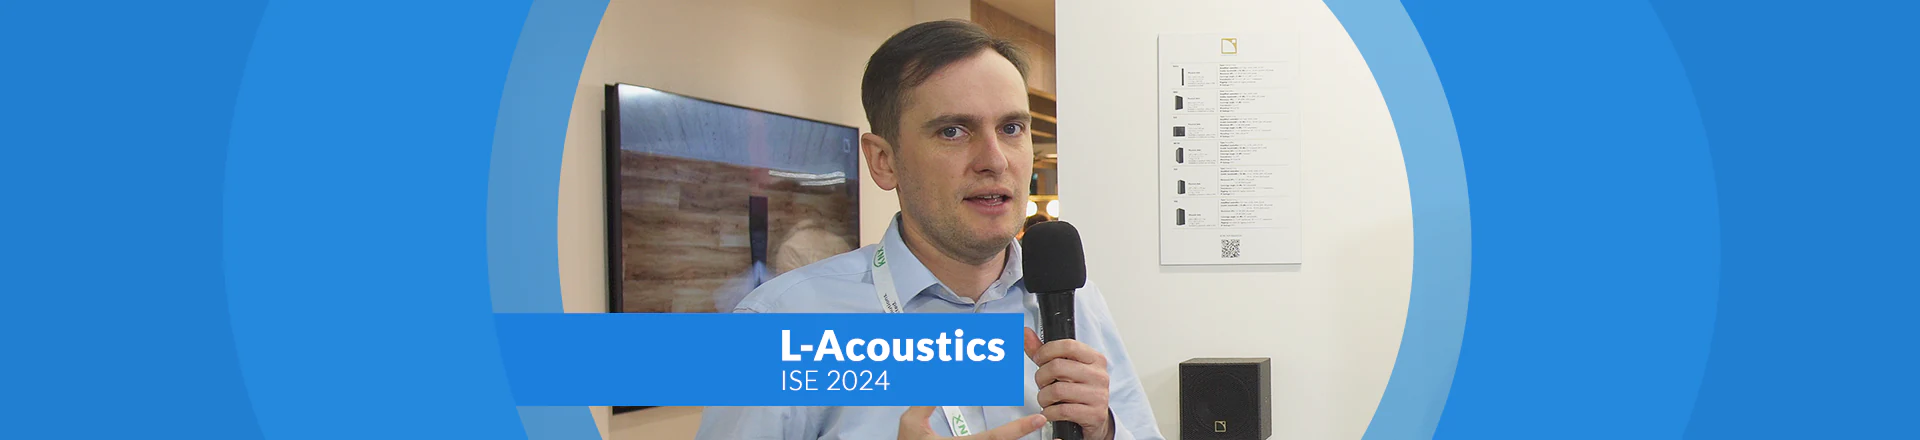 L-Acoustics Xi - głośniki do instalacji klasy premium